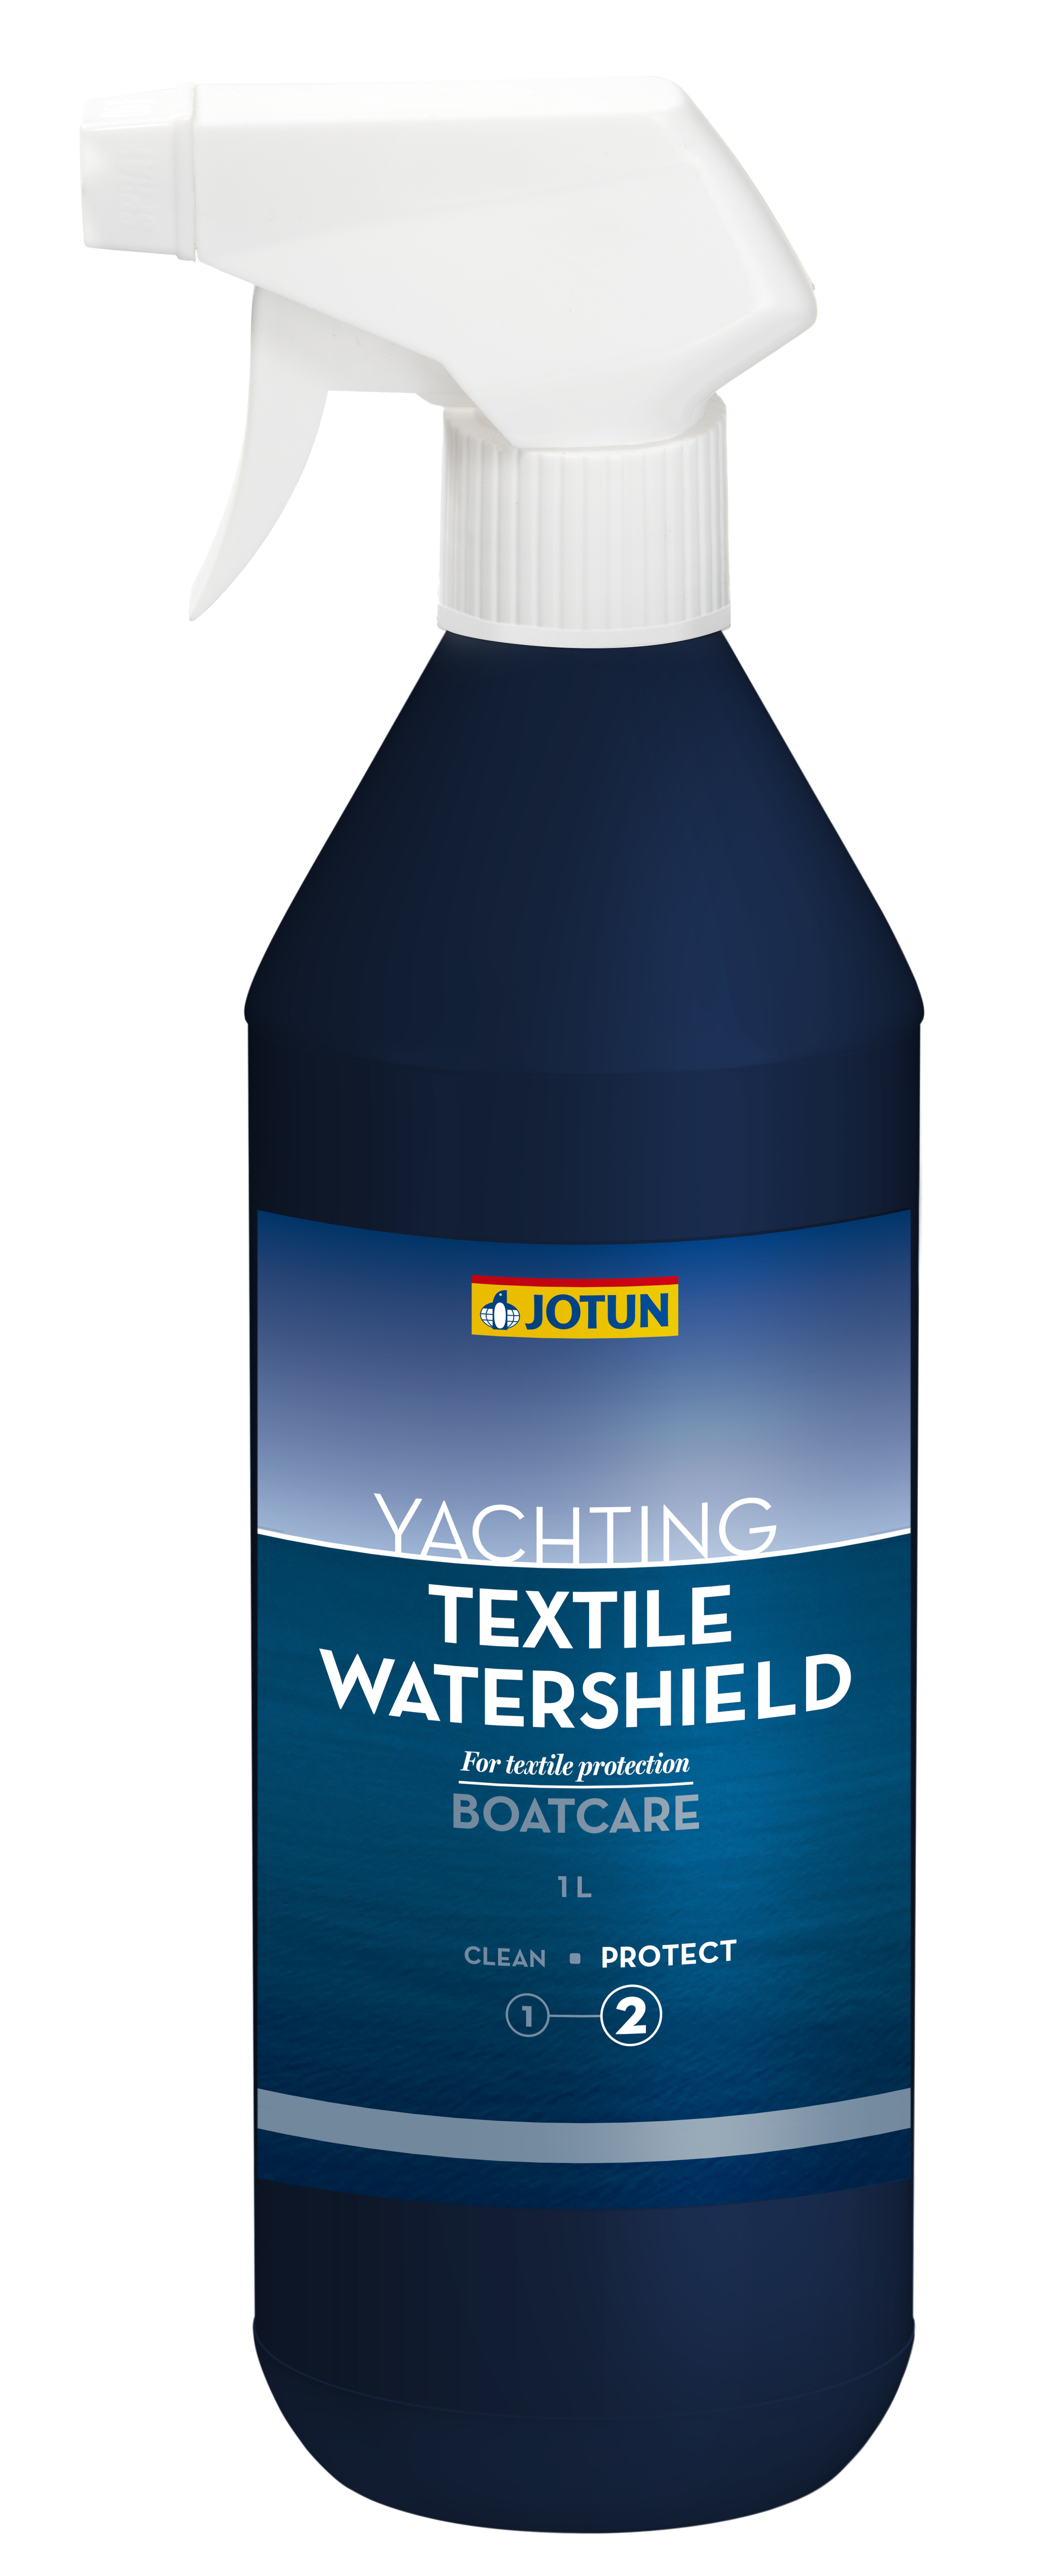 Jotun textile watershield 1l